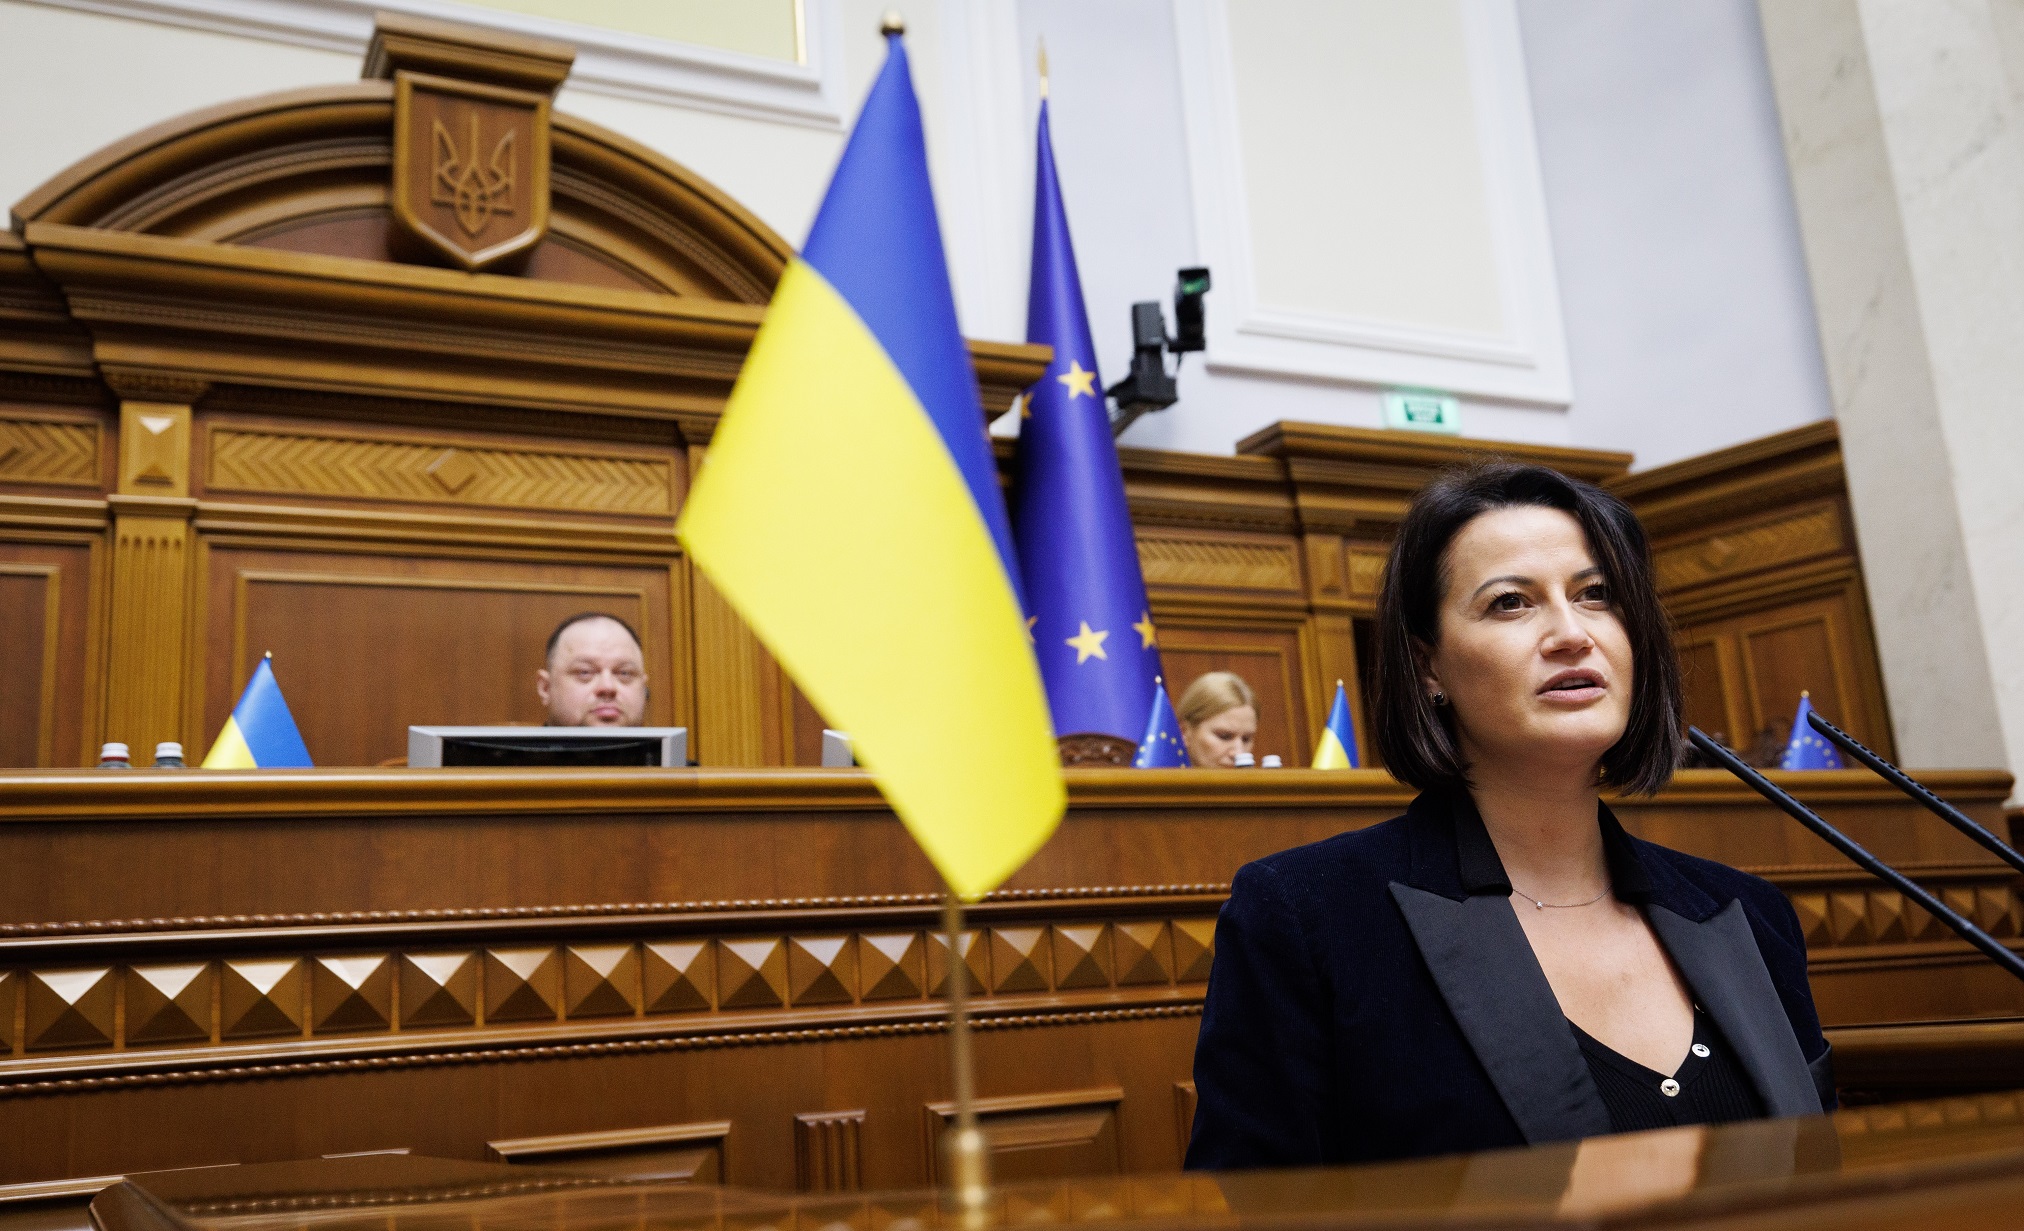  La Présidente du Sénat visite Kiev